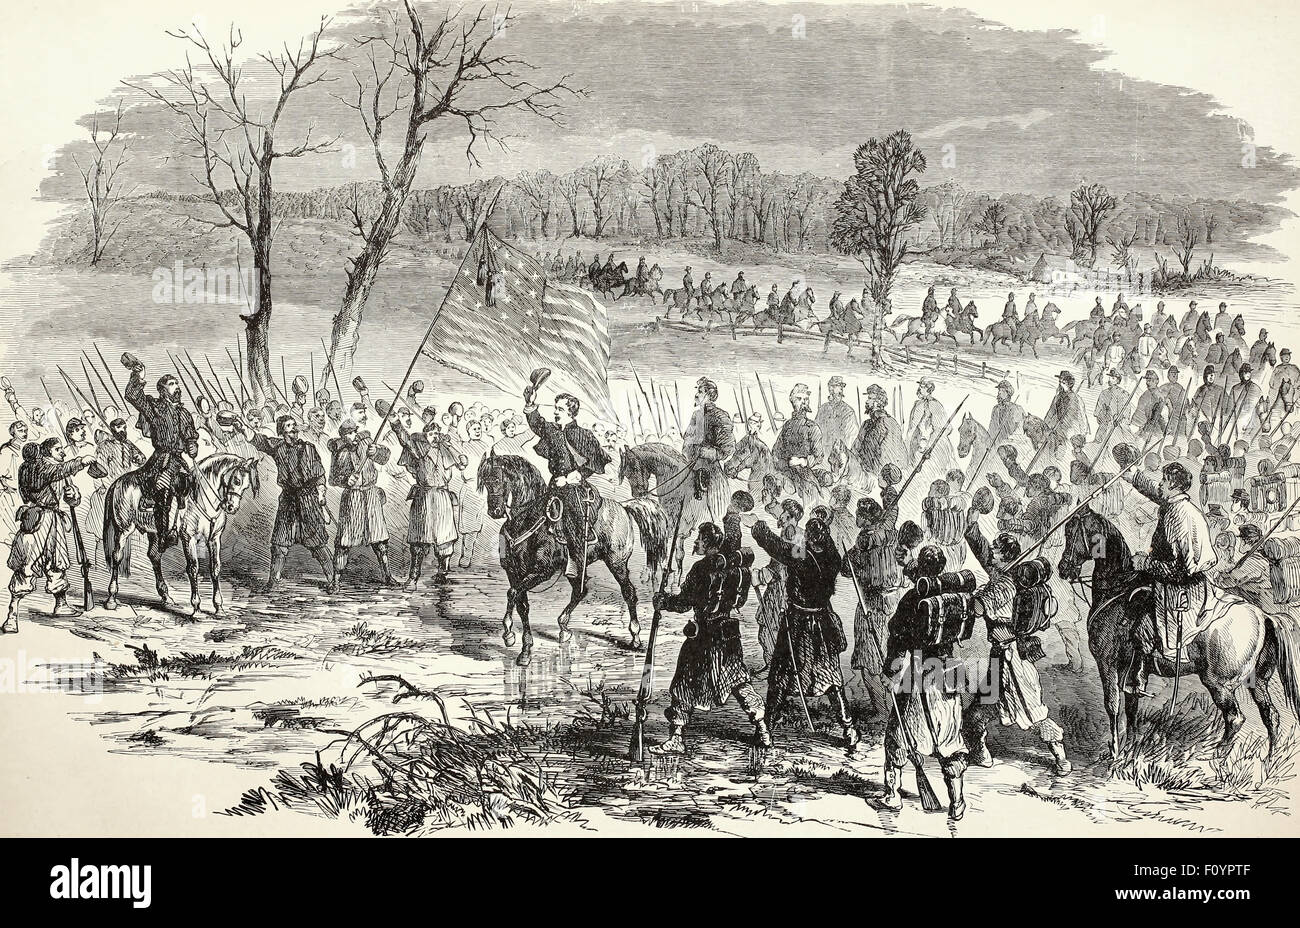 Arrivo del generale McClellan, 5 aprile 1862 a prendere personalmente il comando dell'esercito federale nel suo avanzamento a Yorktown, Virginia - dimostrato entusiasta accoglienza da parte delle truppe Foto Stock